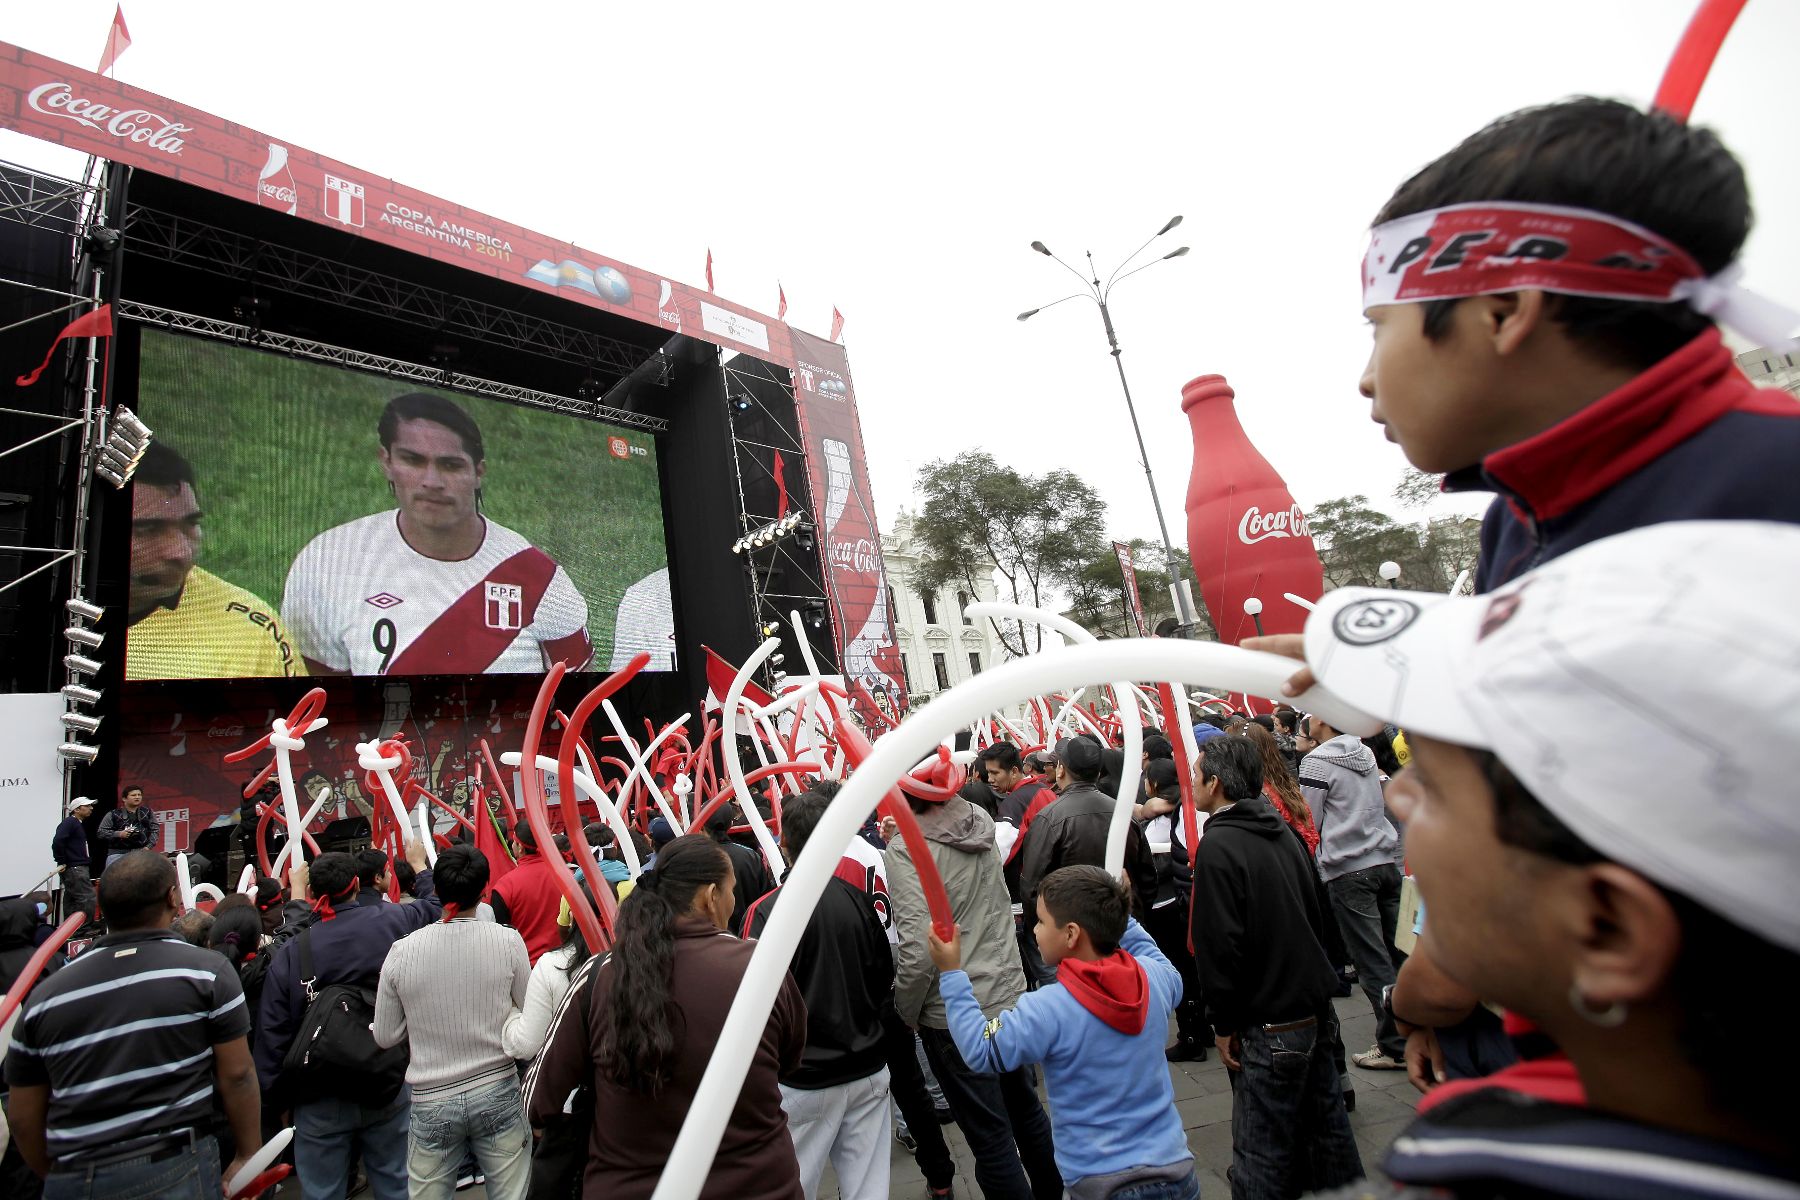 Cajamarca ya vive el ambiente por el repechaje que disputarán las selecciones de Perú y Australia. La municipalidad instalará una pantalla gigante en la explanada del complejo Qhapaq Ñan. ANDINA/archivo